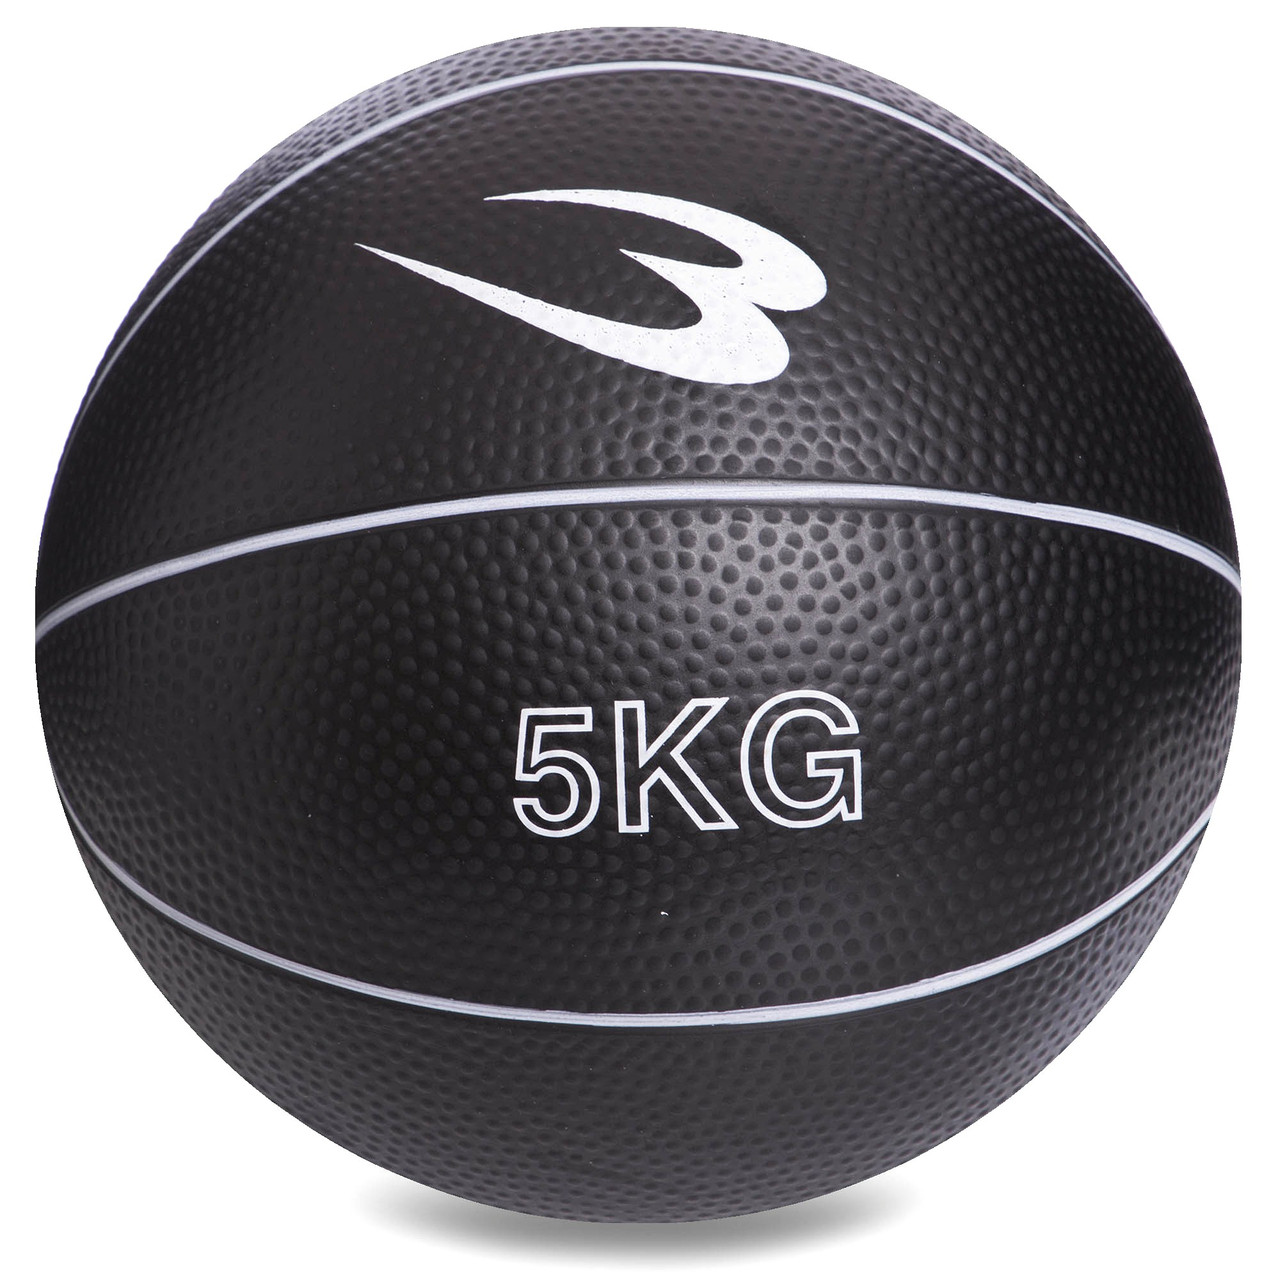 Медбол (медицинский мяч) 5кг для кроссфита Record Medicine Ball SC-8407-5